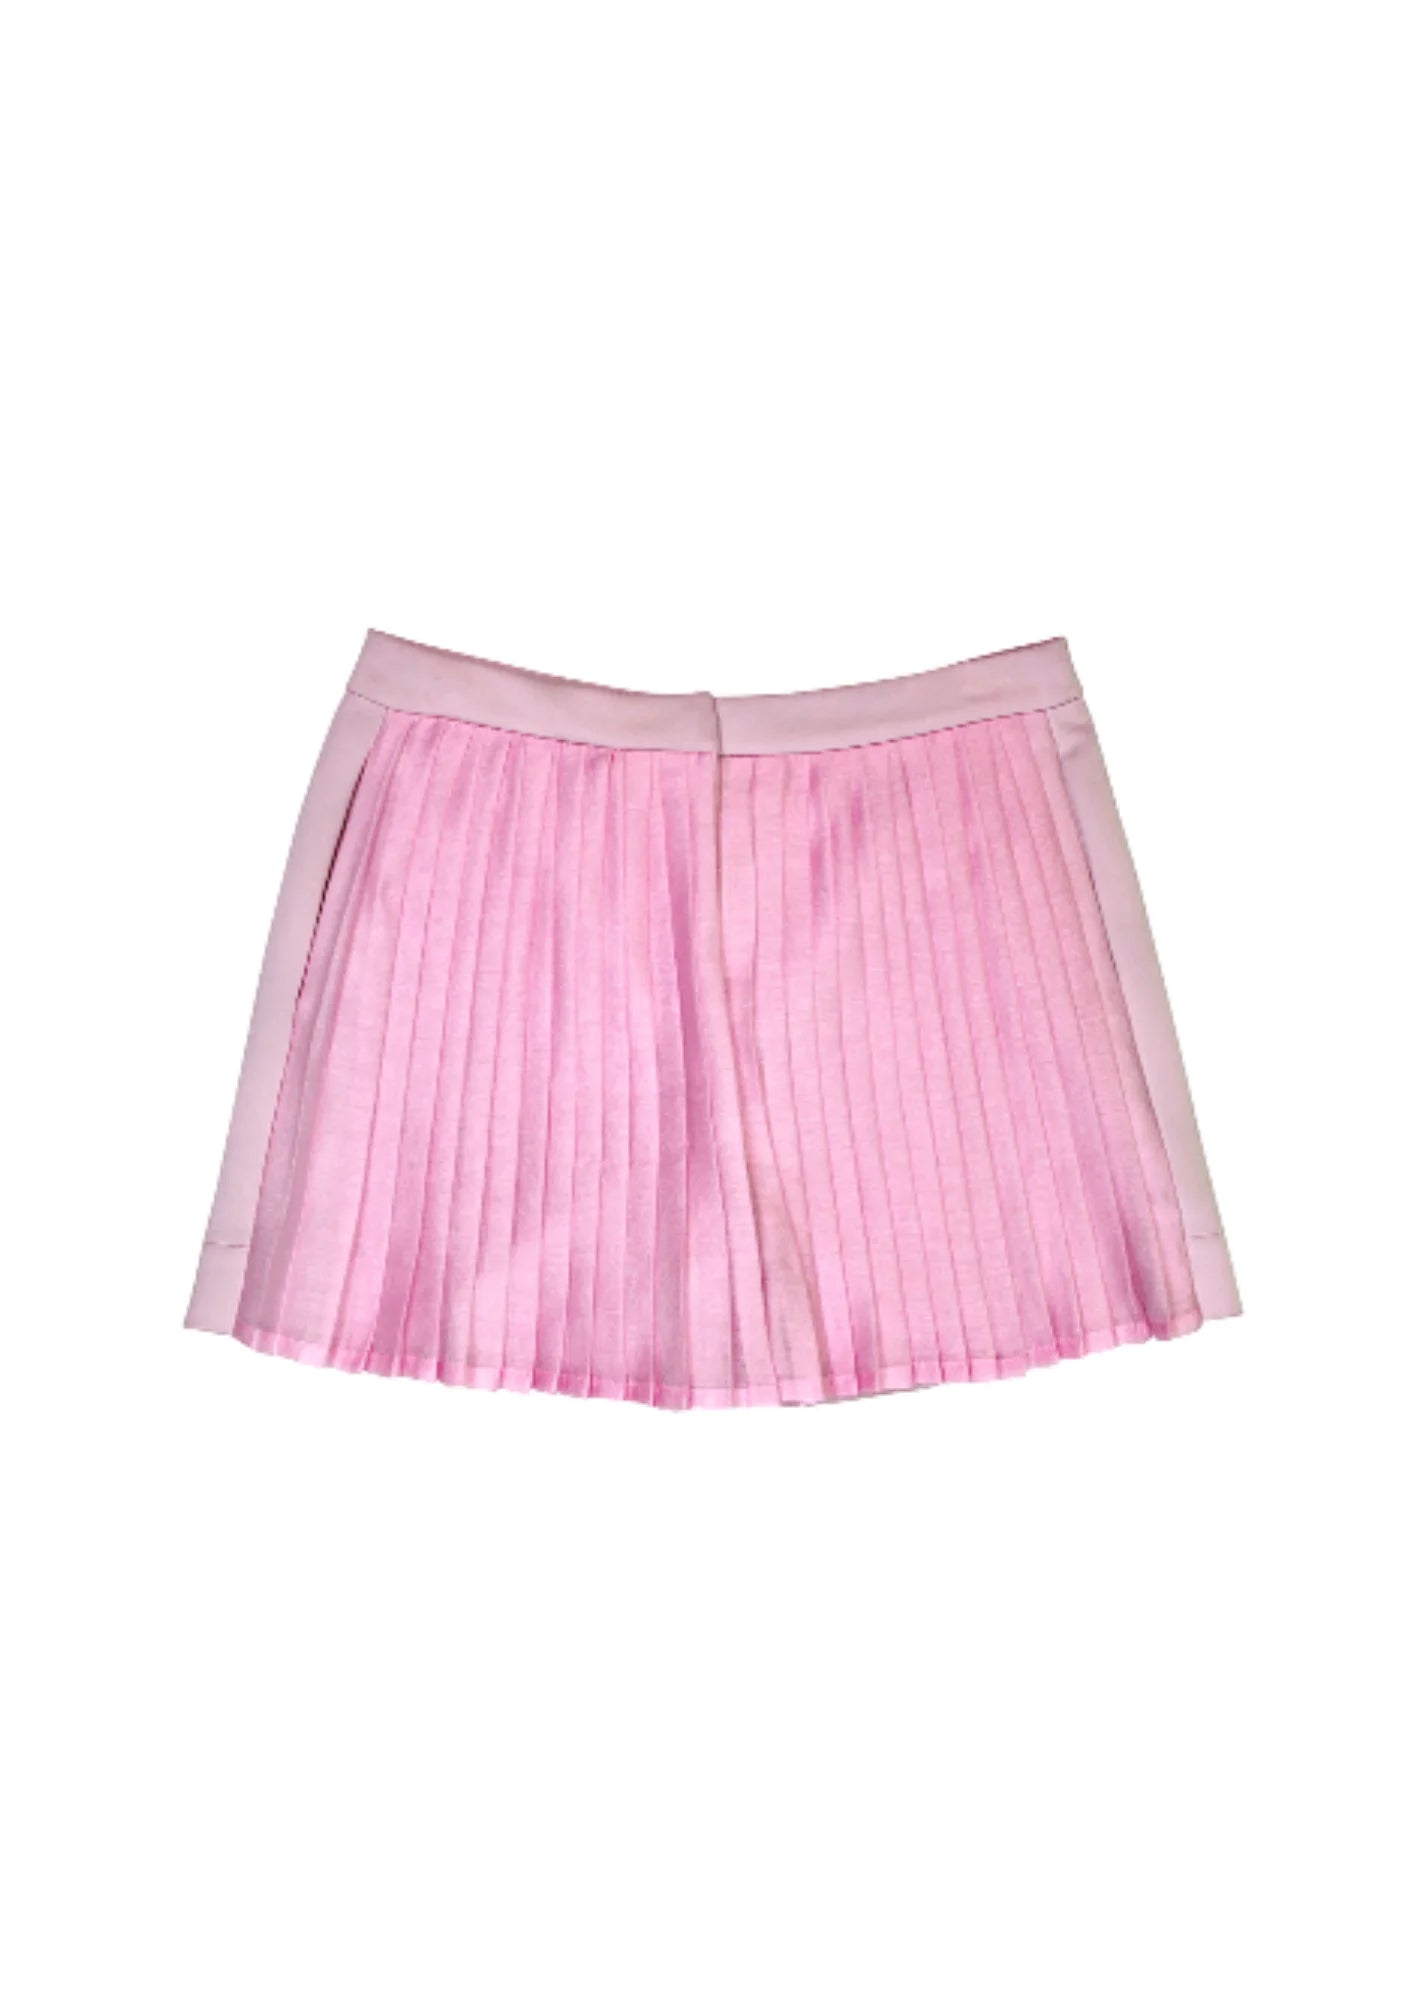 Pastellrosa -Falten -Shorts